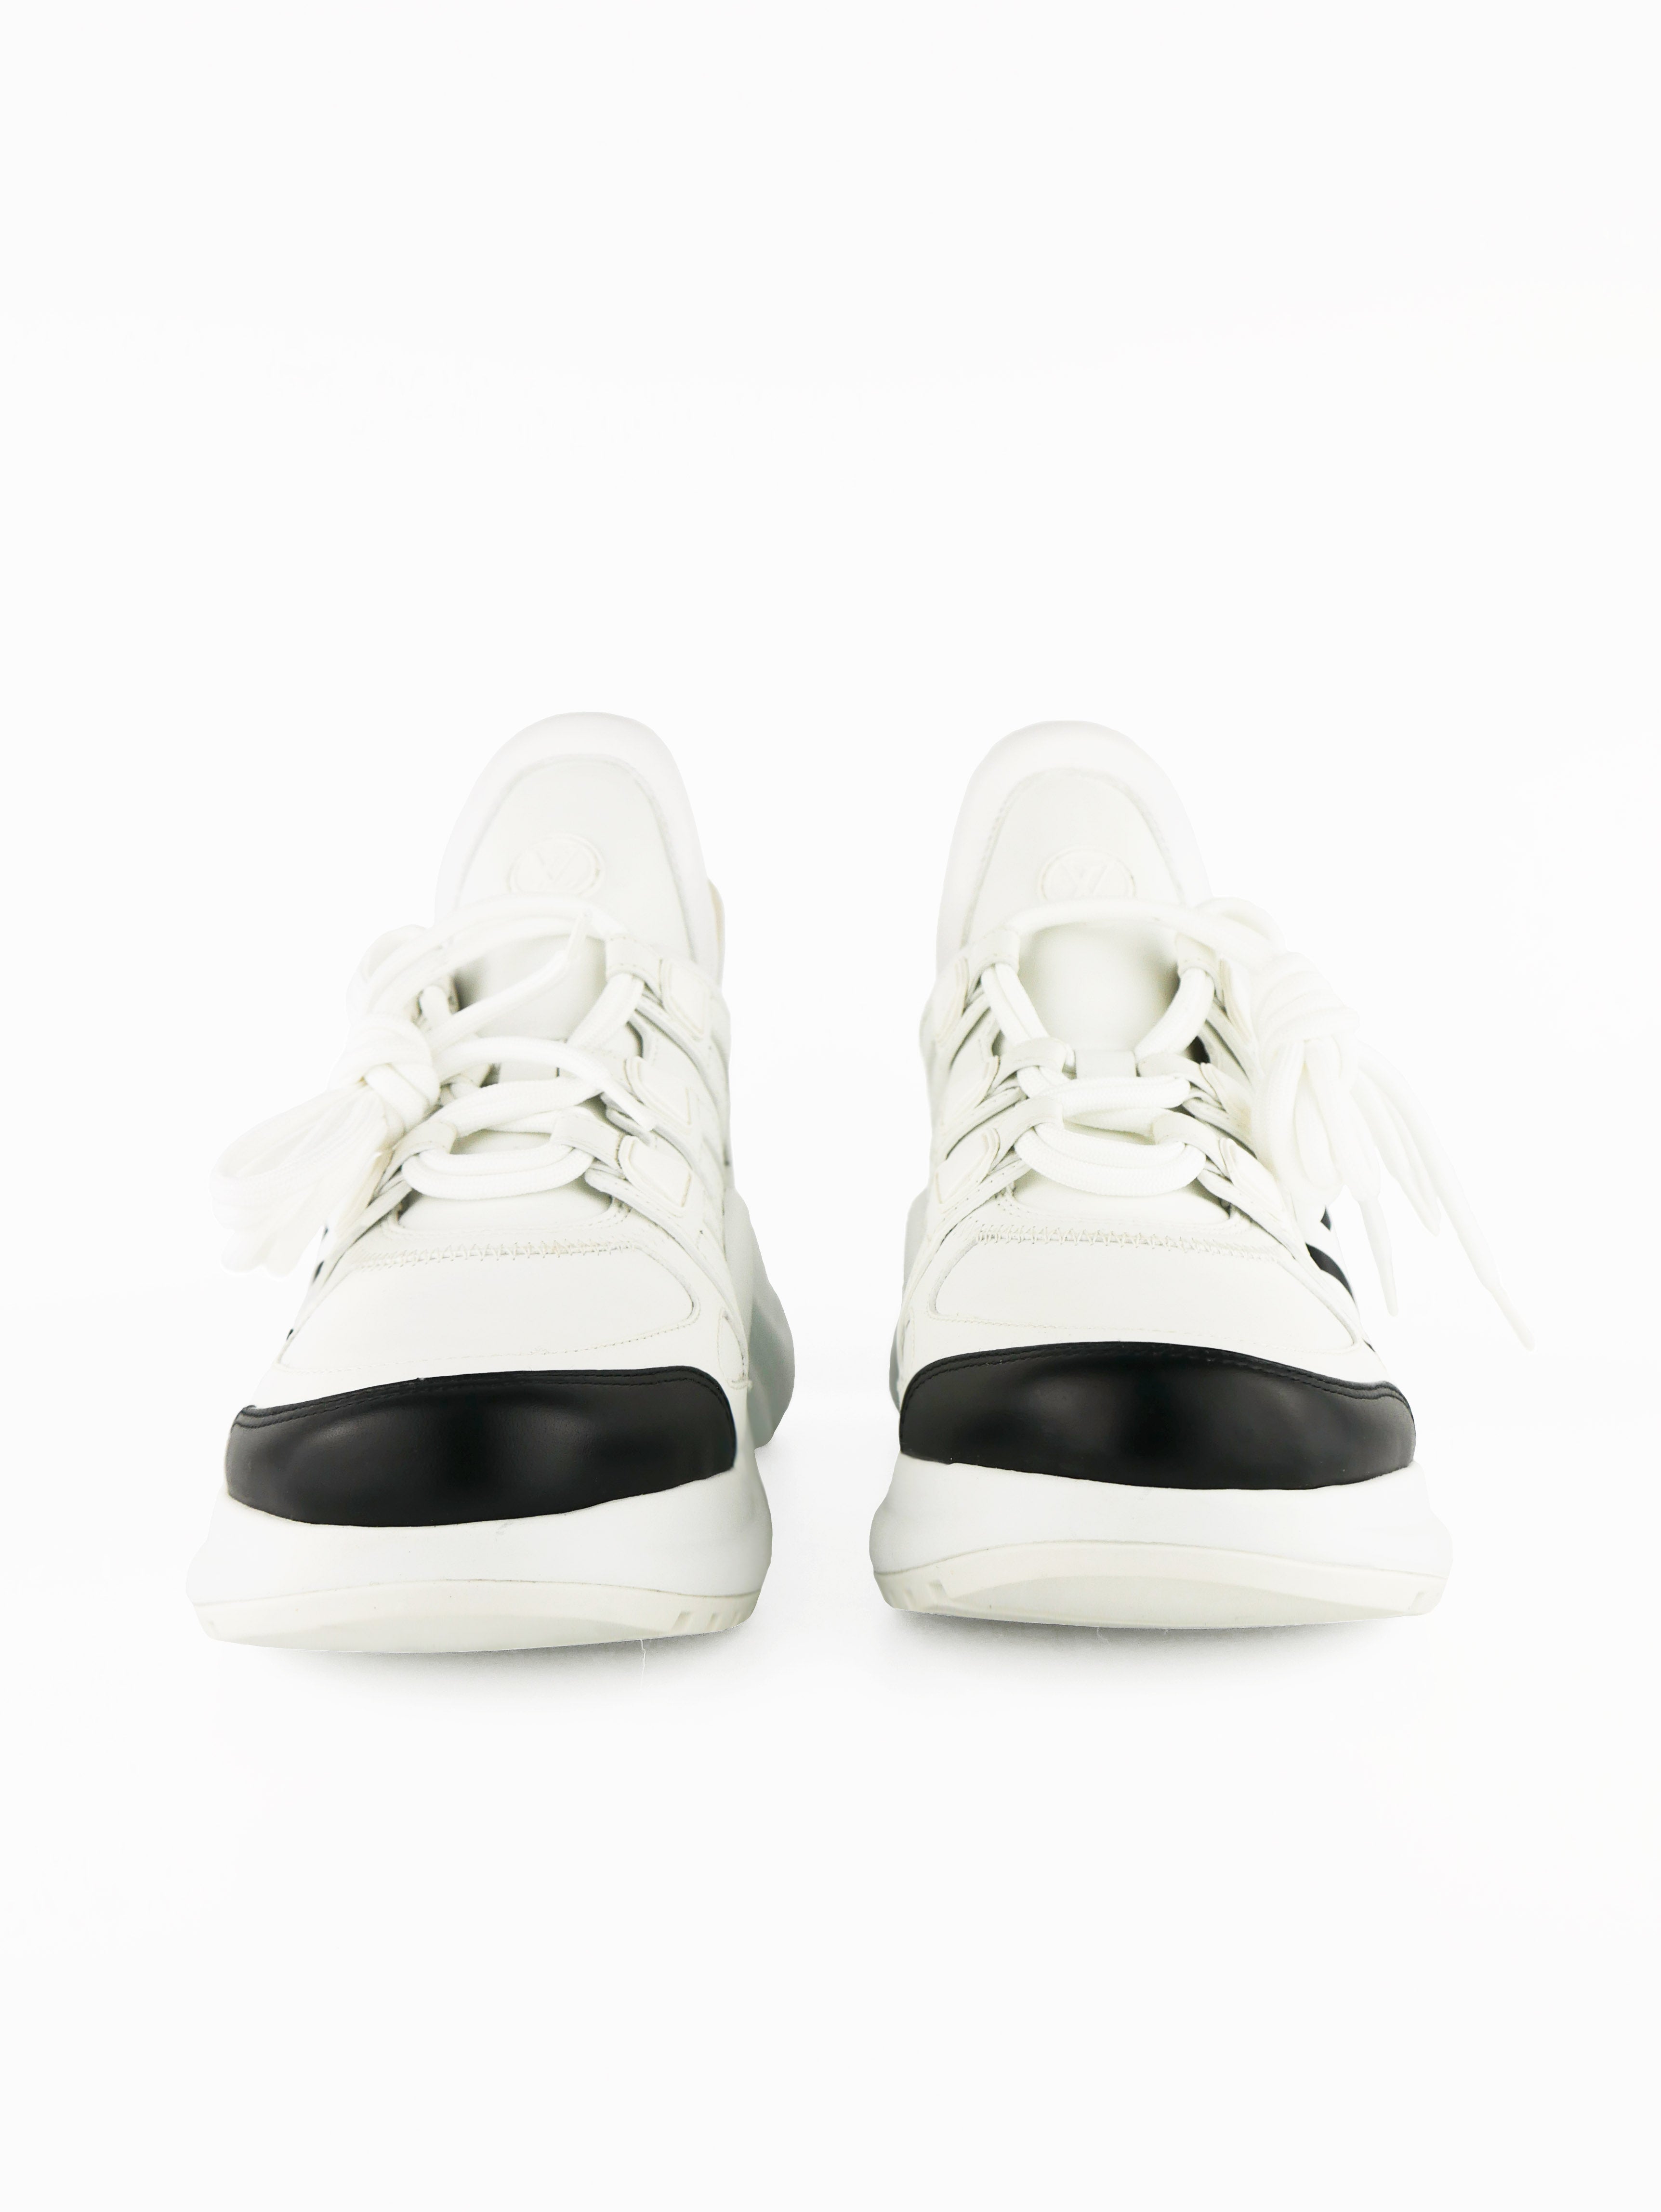 Louis Vuitton Archlight Sneakers 39 – Votre Luxe